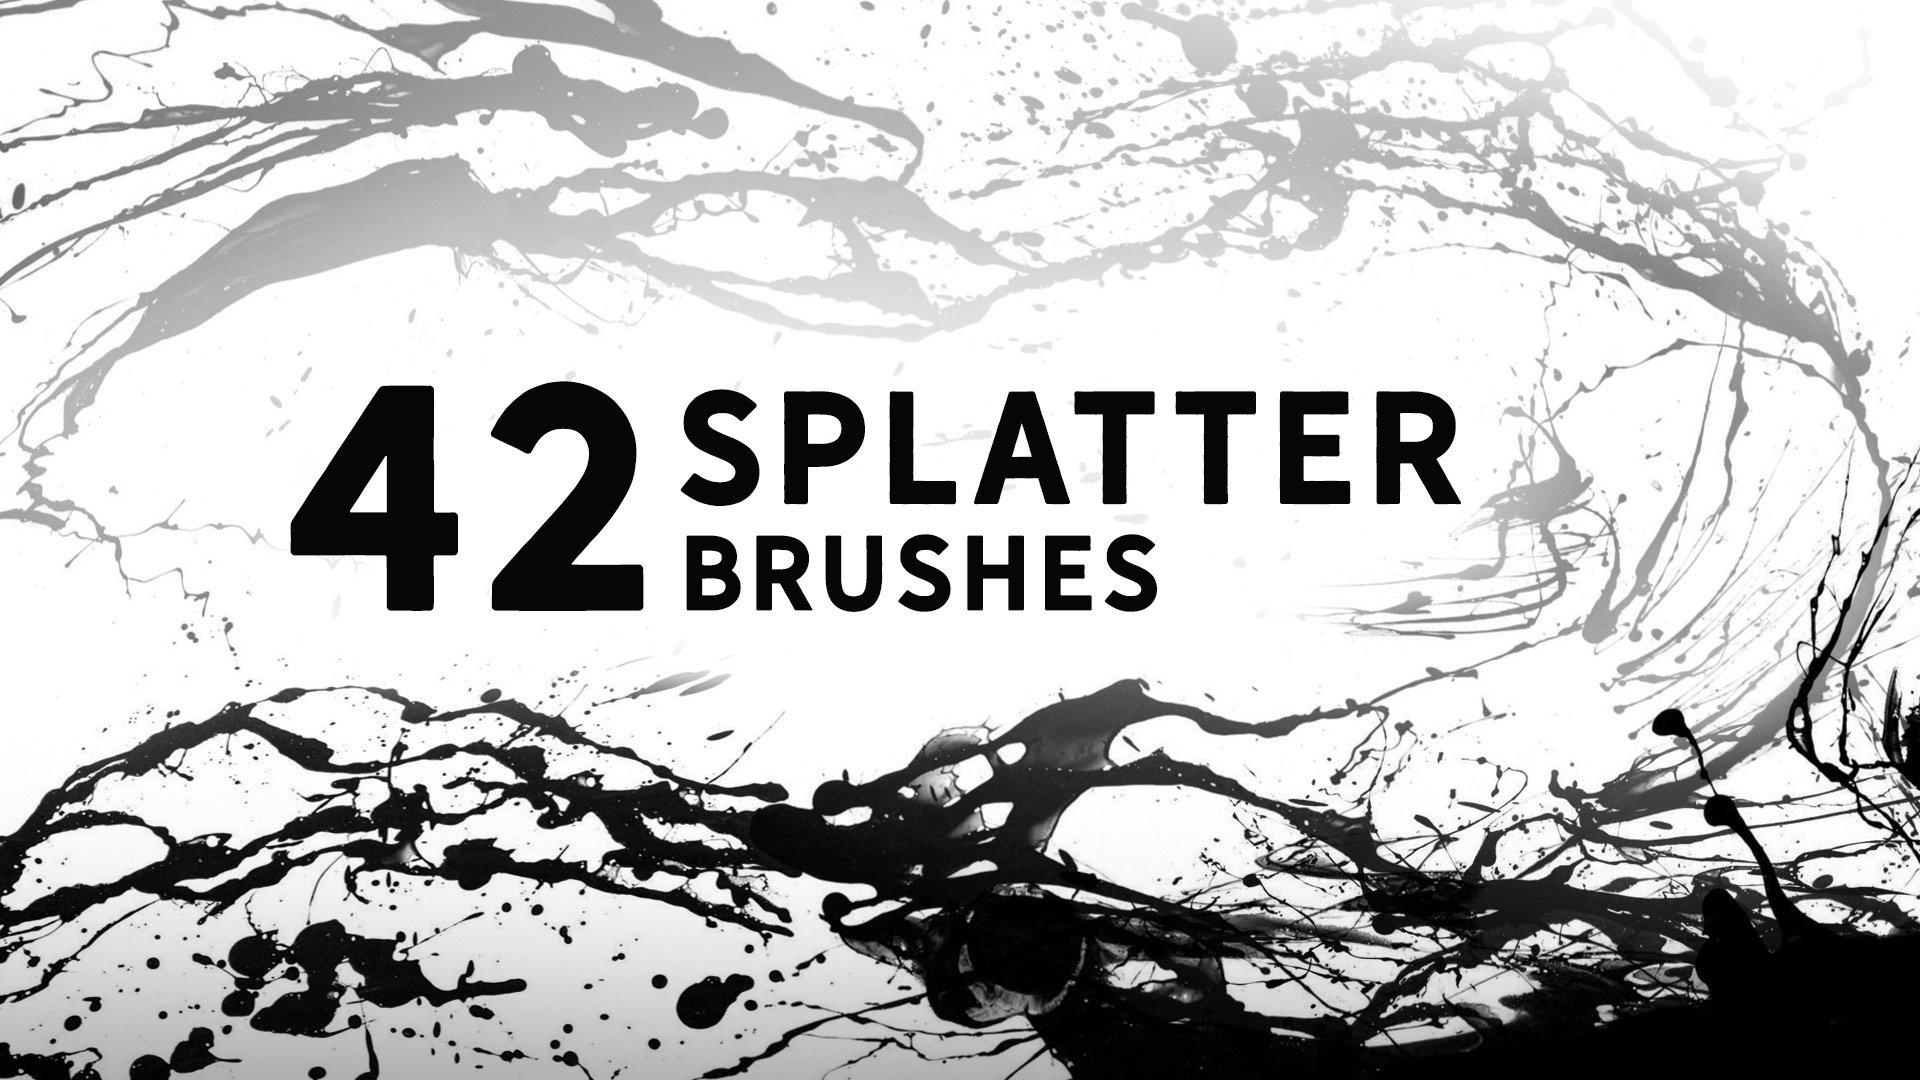 42 Splatter brushescover image.